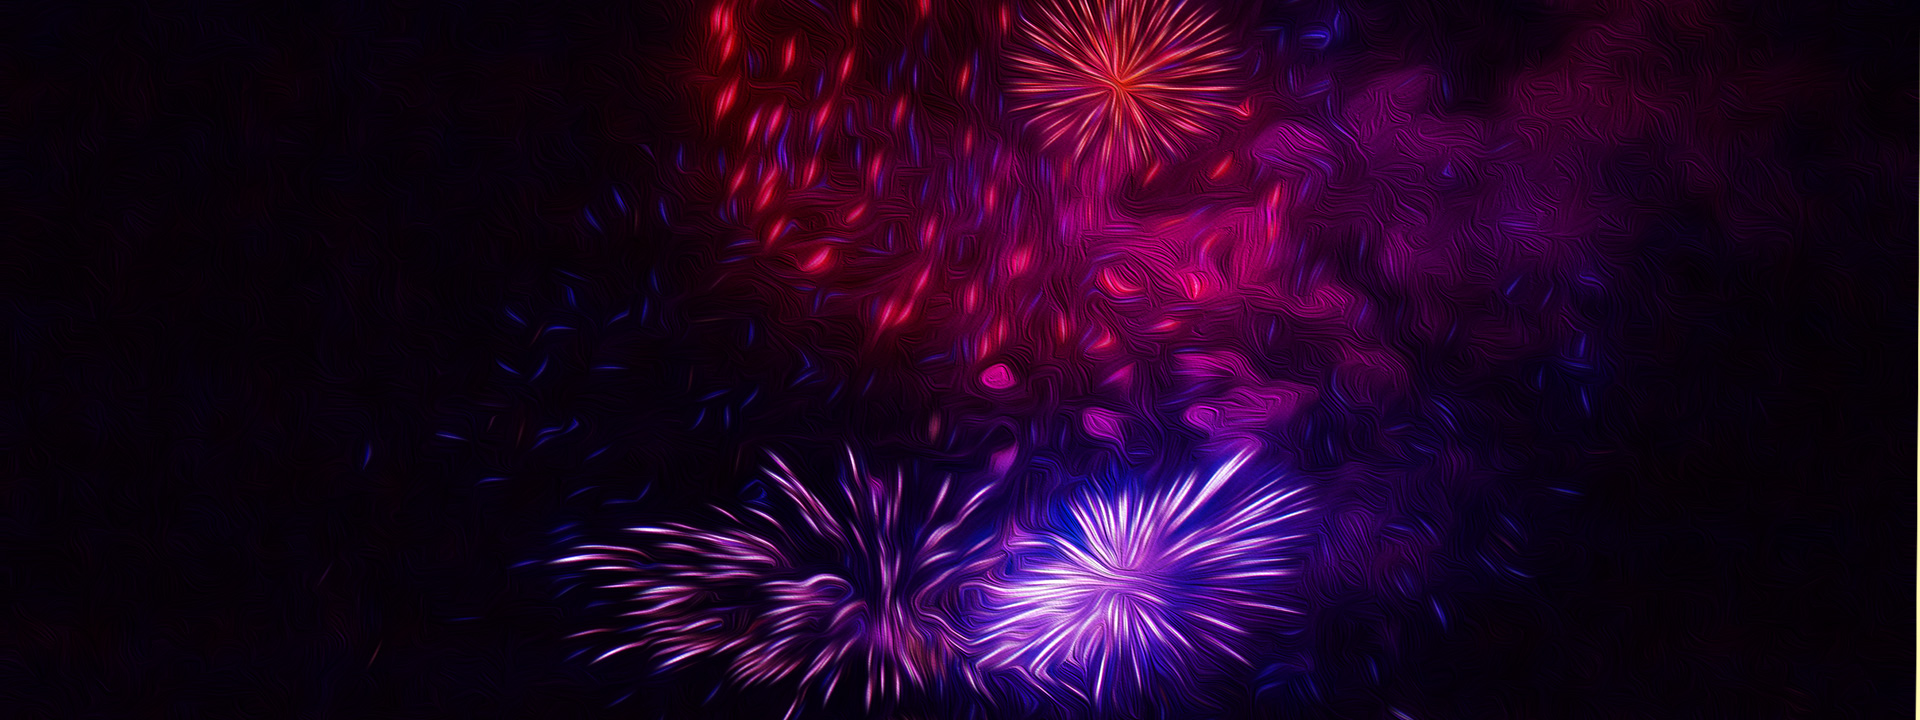 Mit langer Belichtung fotgrafiertes Feuerwerk am Himmel. Es wirkt wie ein Gemälde in den Farben rot, lila und blau.